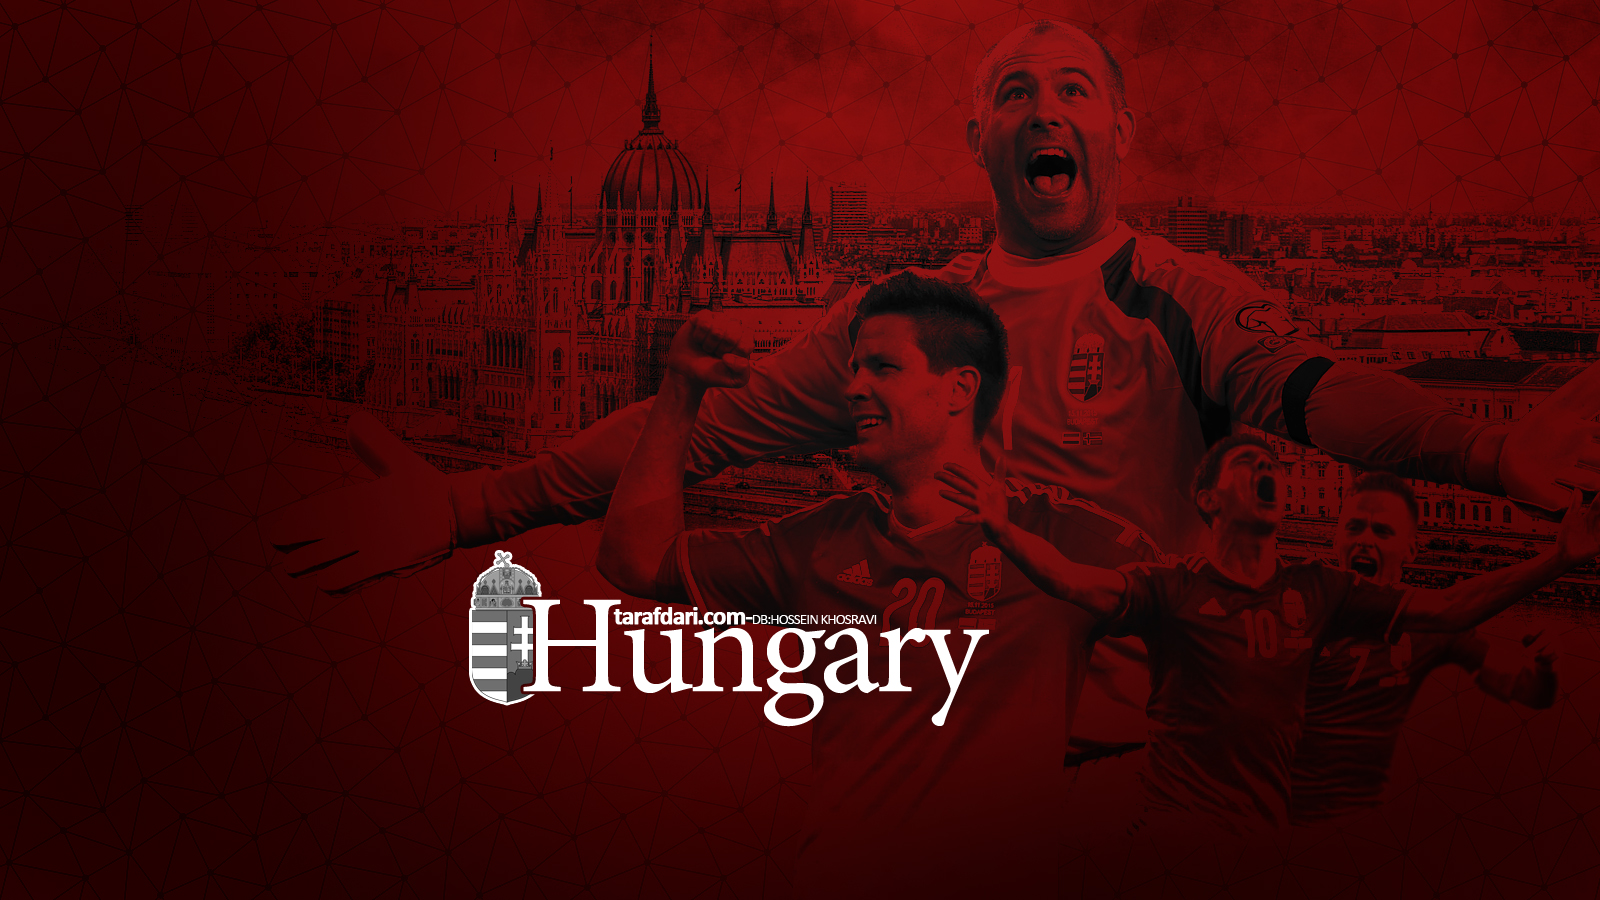 یورو 2016؛ پوستر اختصاصی طرفداری، مجارستان در انتظار بازگشتی باشکوه